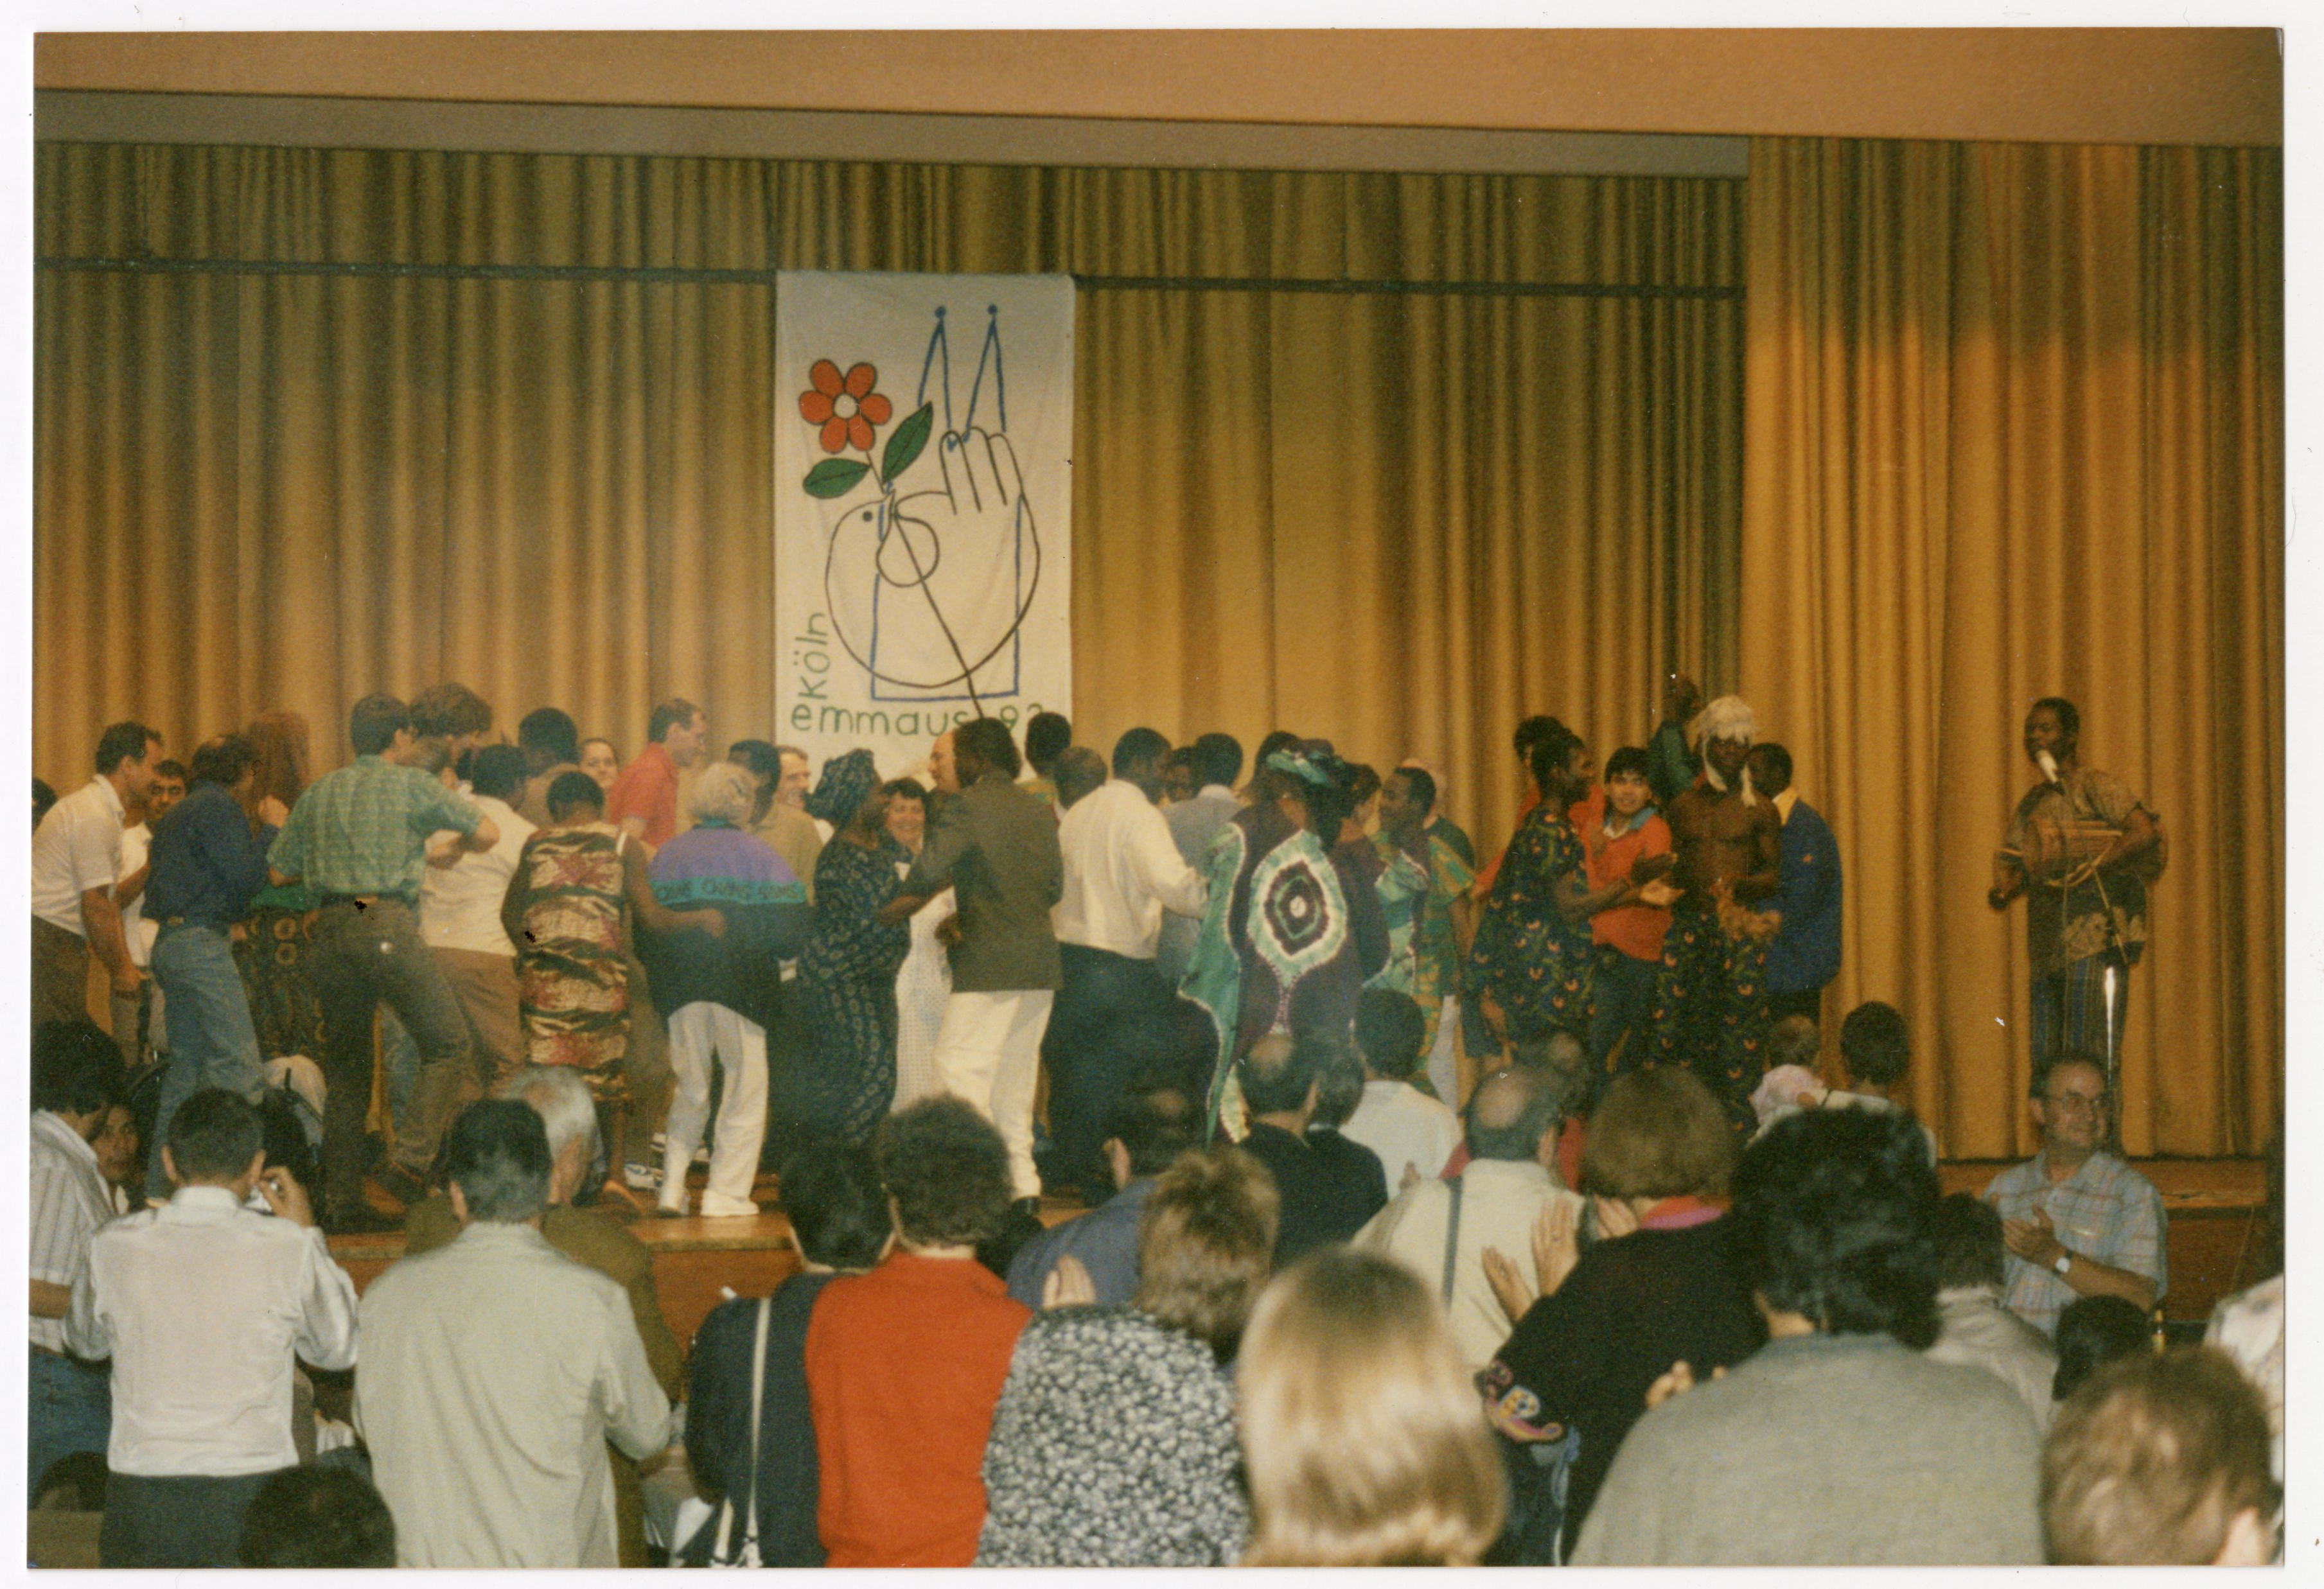 Photographie de participants à l'assemblée dansant pendant une représentation musicale, 1992.